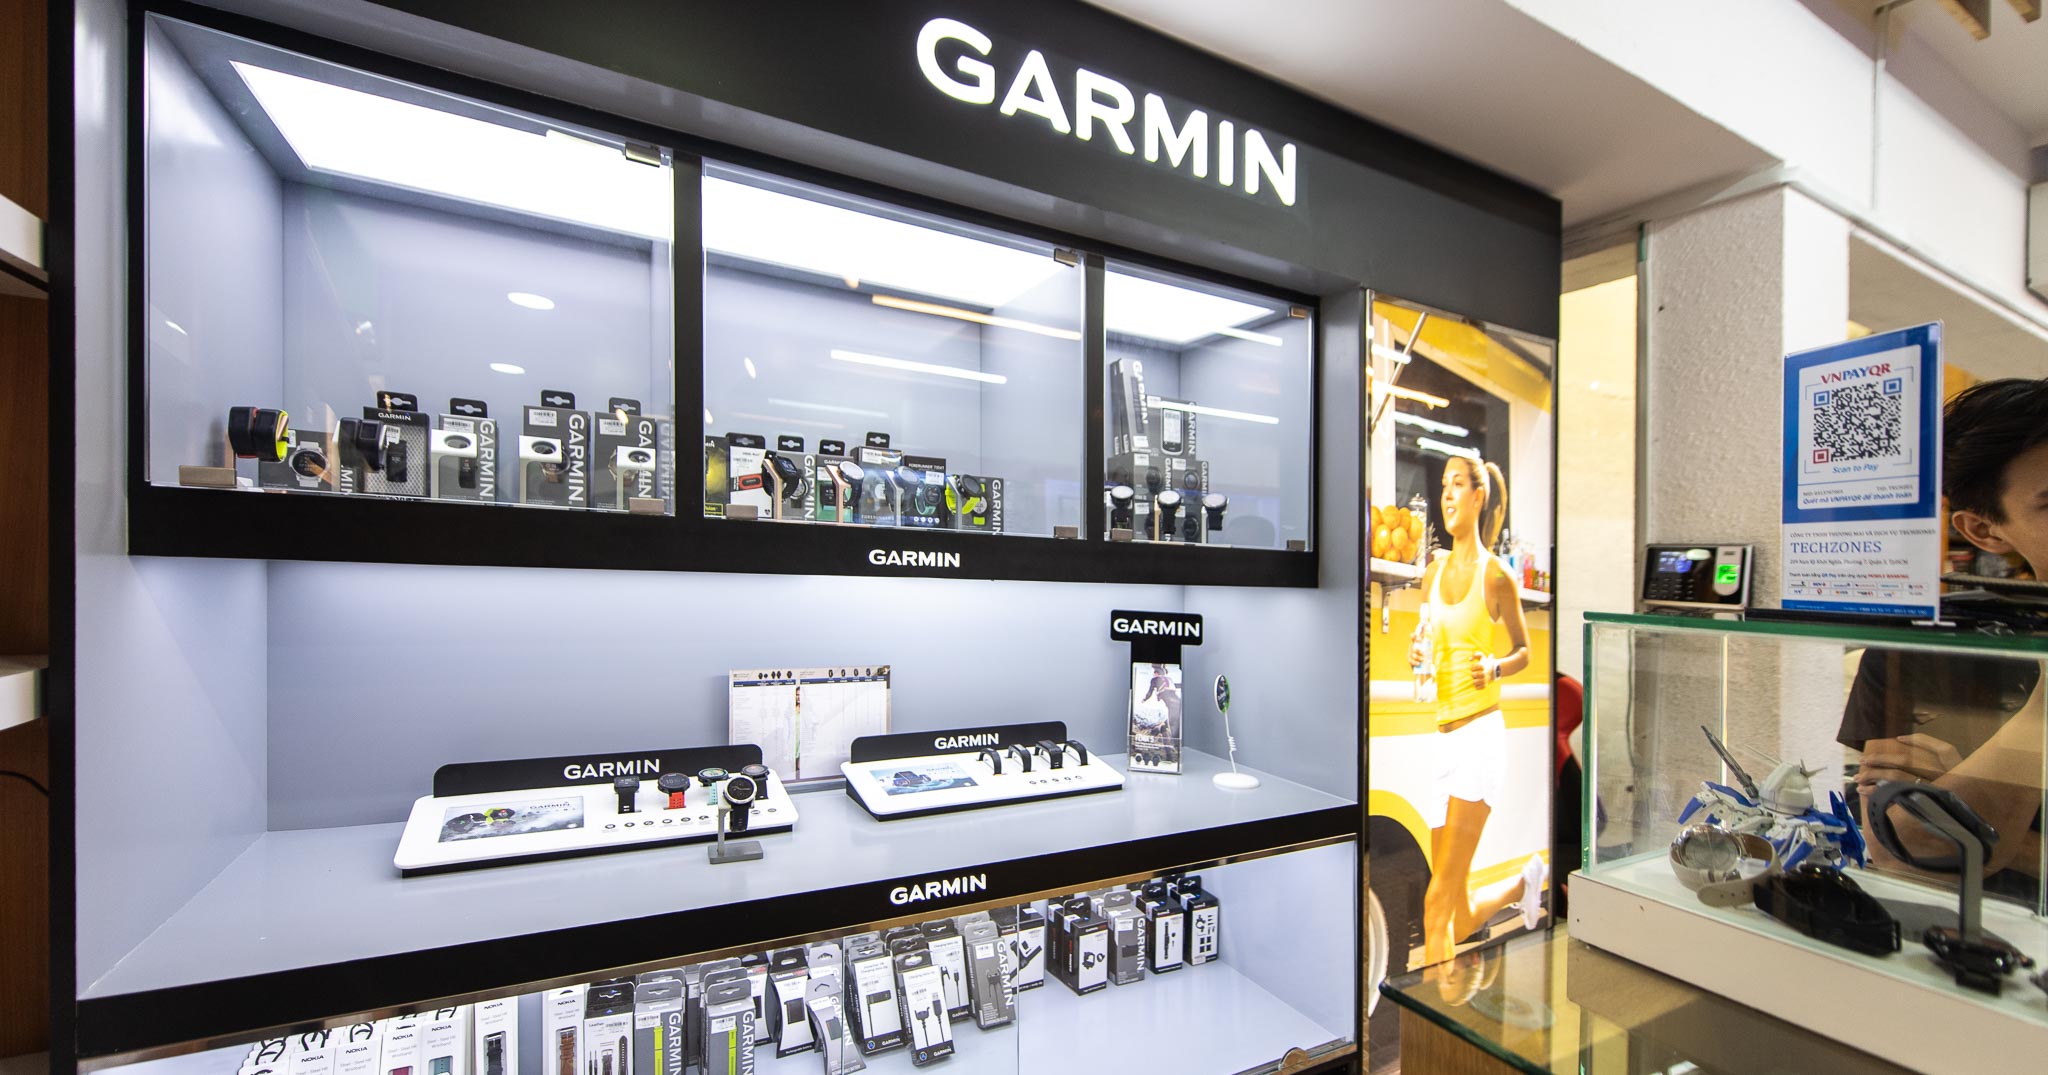 Garmin mở Garmin Corner ở SG, giảm giá một loạt sản phẩm, có thể sẽ có cửa hàng riêng